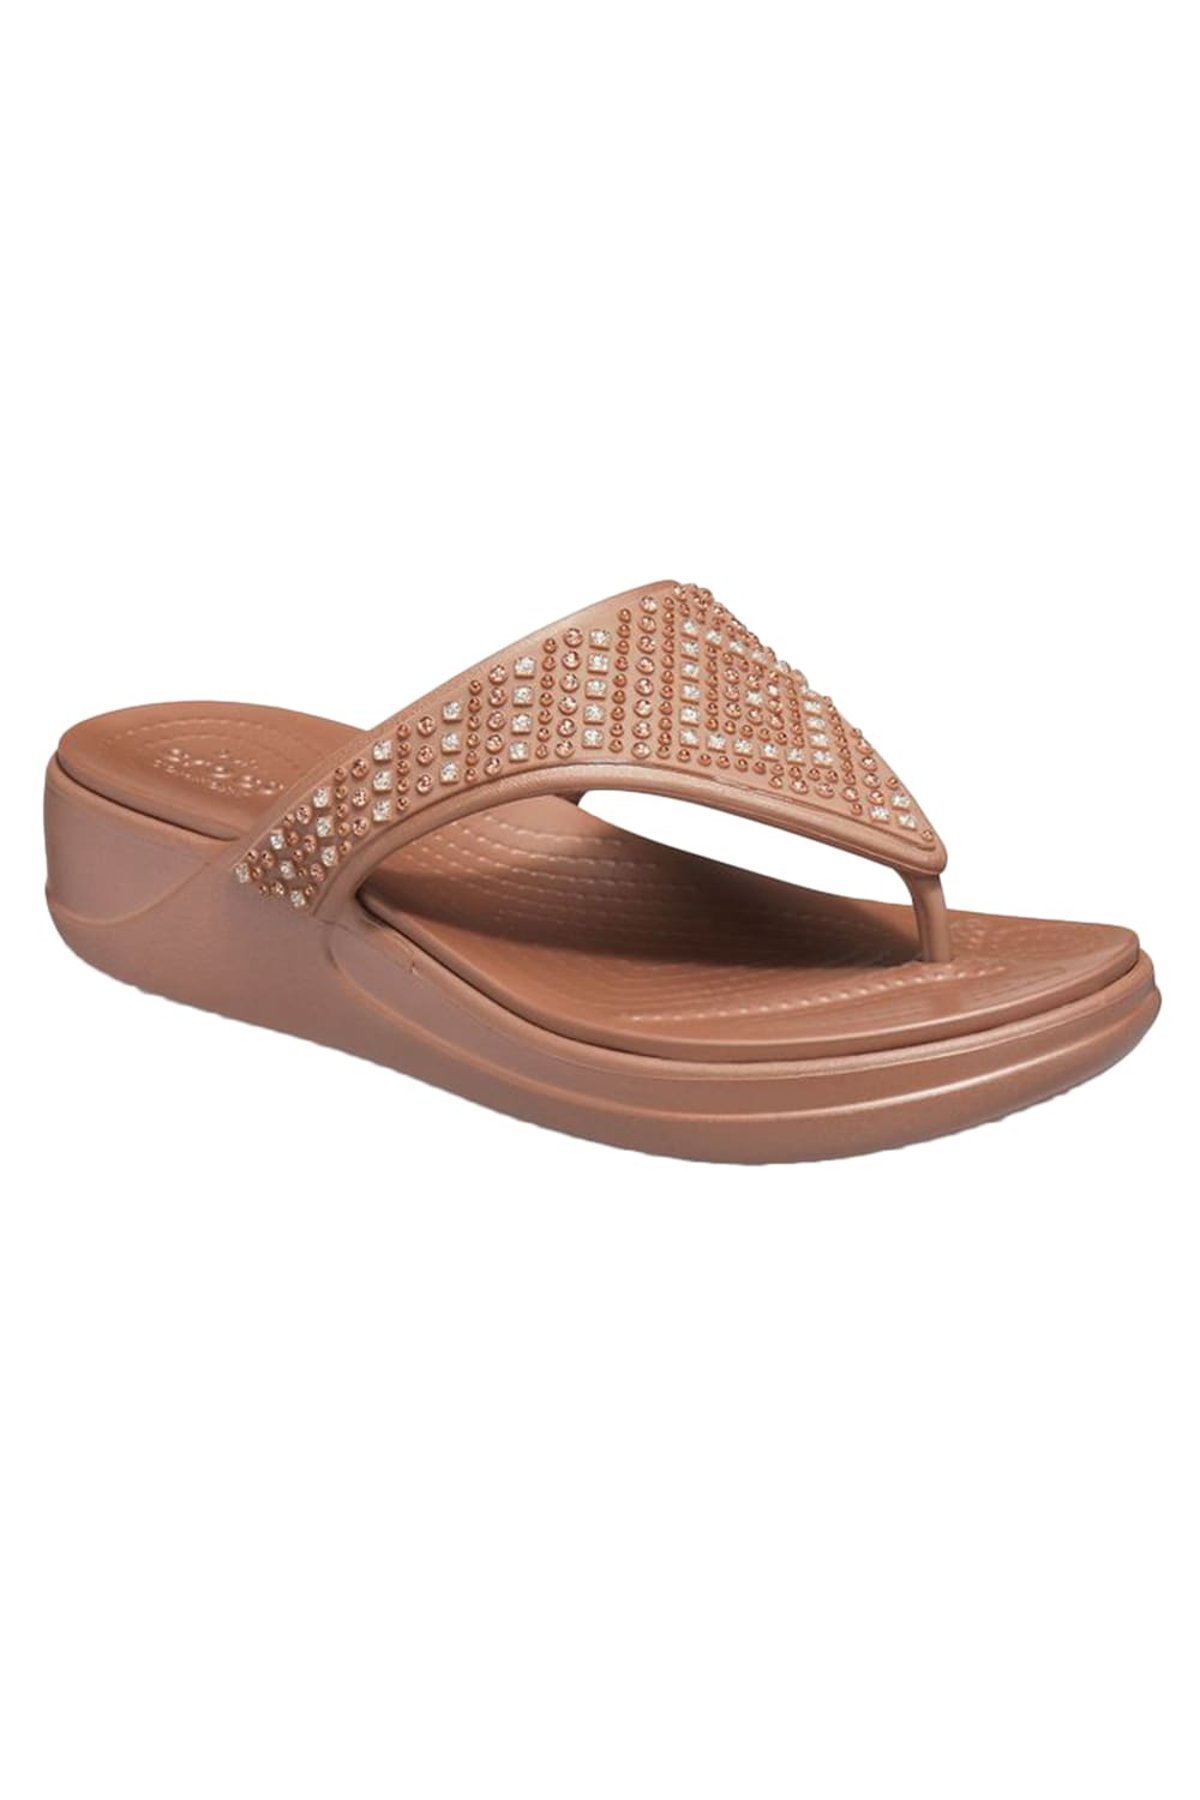 handel terugbetaling Forensische geneeskunde Crocs Bronze Womens/Ladies Monterey Shimmer Sandals (Bronze) | Verishop